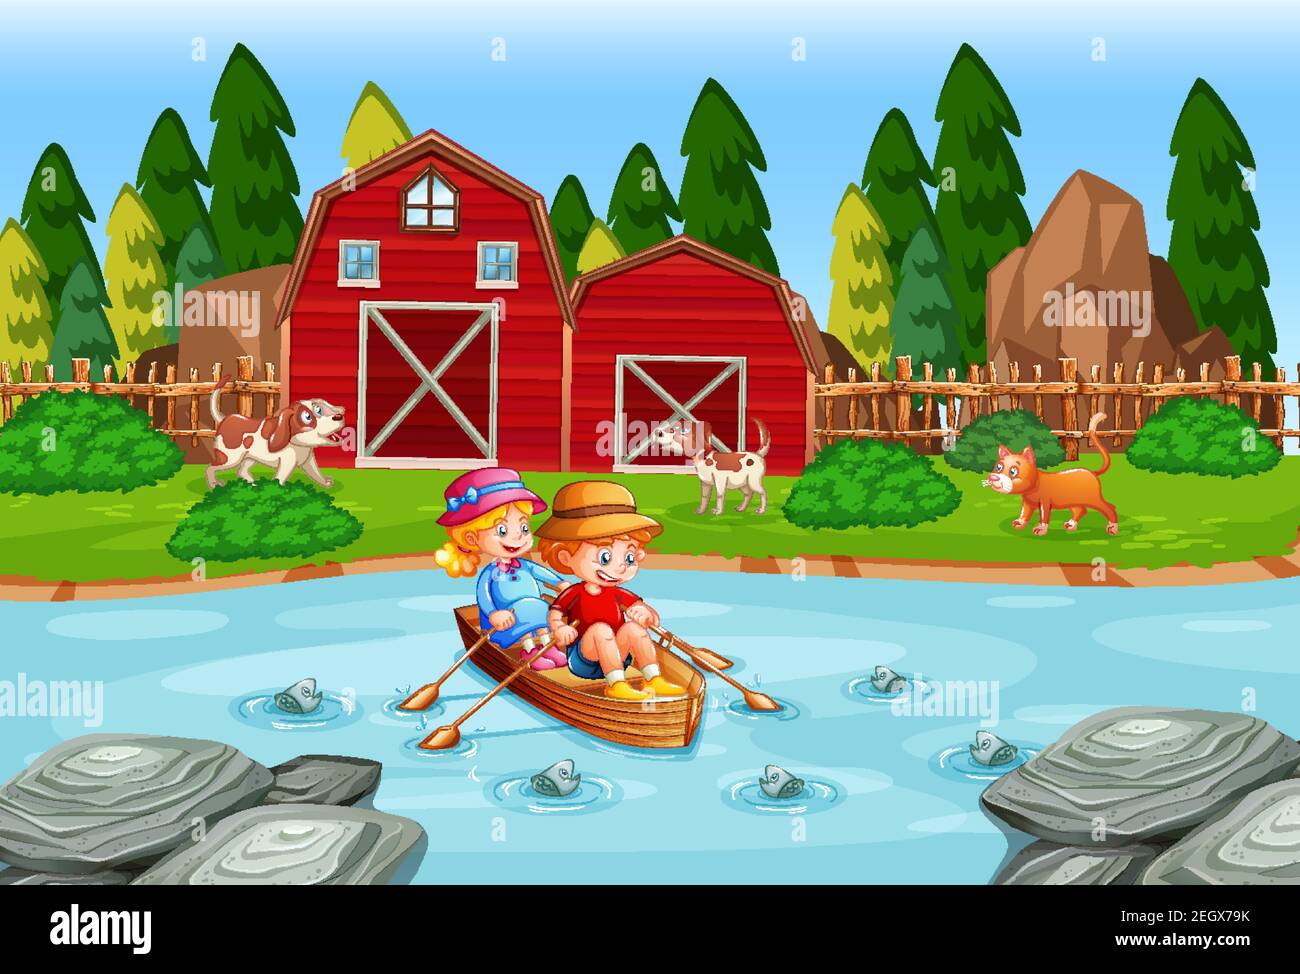 Les enfants sont à la rangée du bateau dans l'illustration de la scène de la ferme de ruisseau Illustration de Vecteur